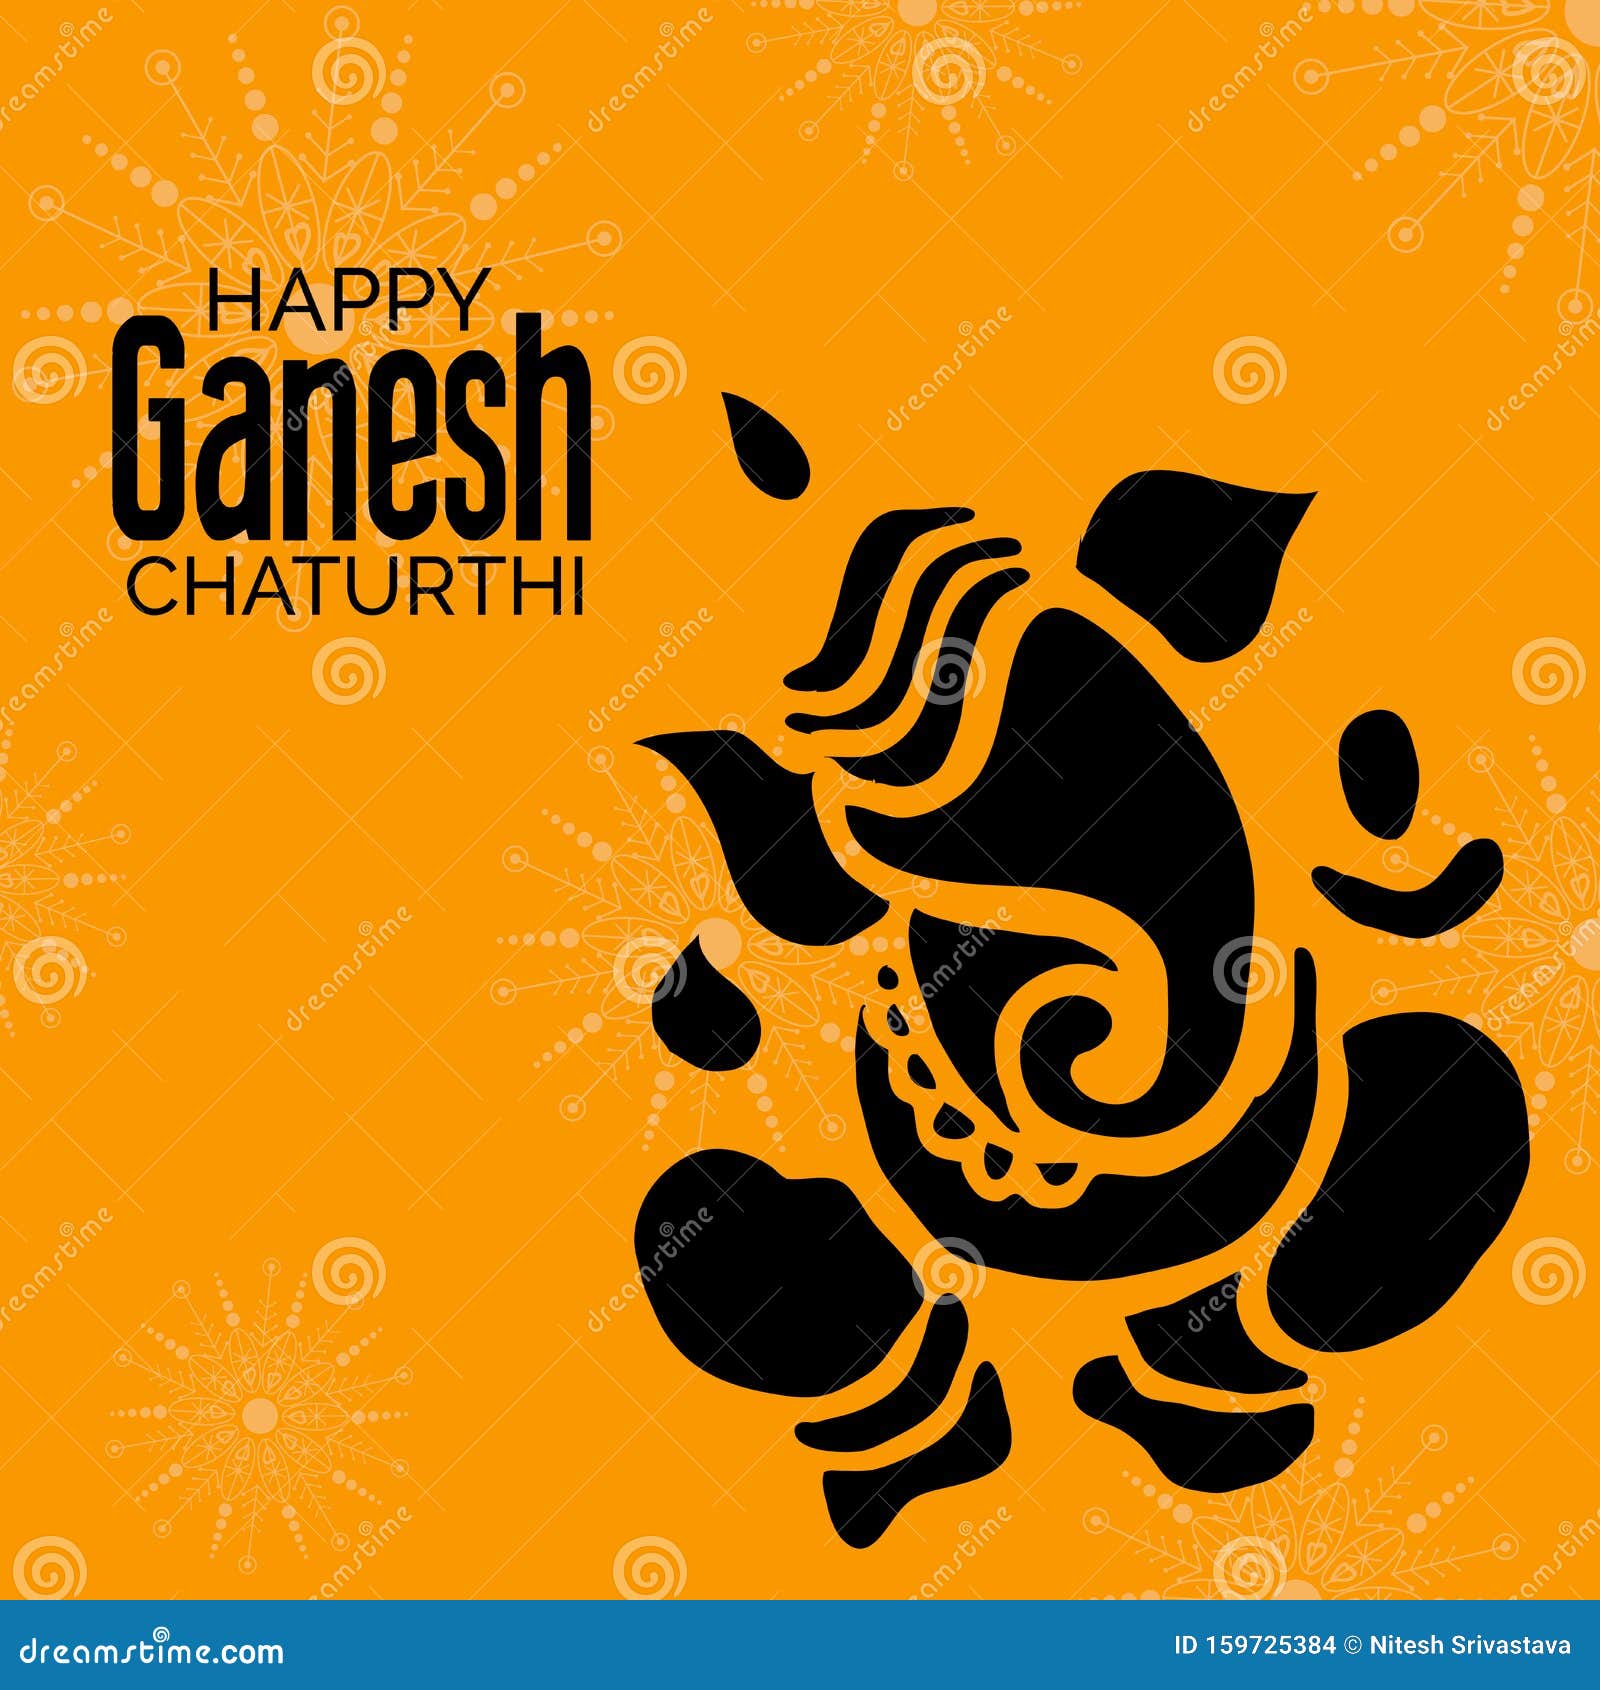 Ganesh Chaturthi stock illustration. Illustration of background - 159725384